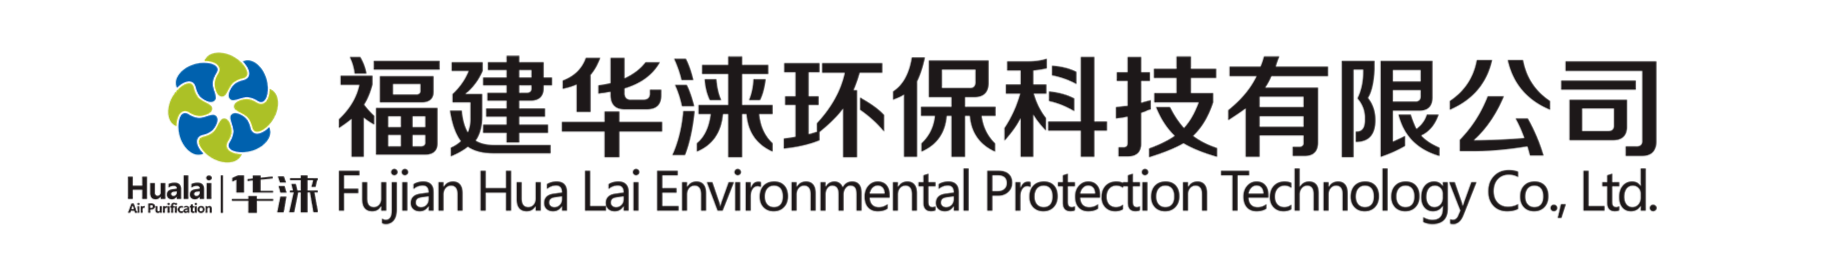 风淋室-福建华涞环保科技有限公司